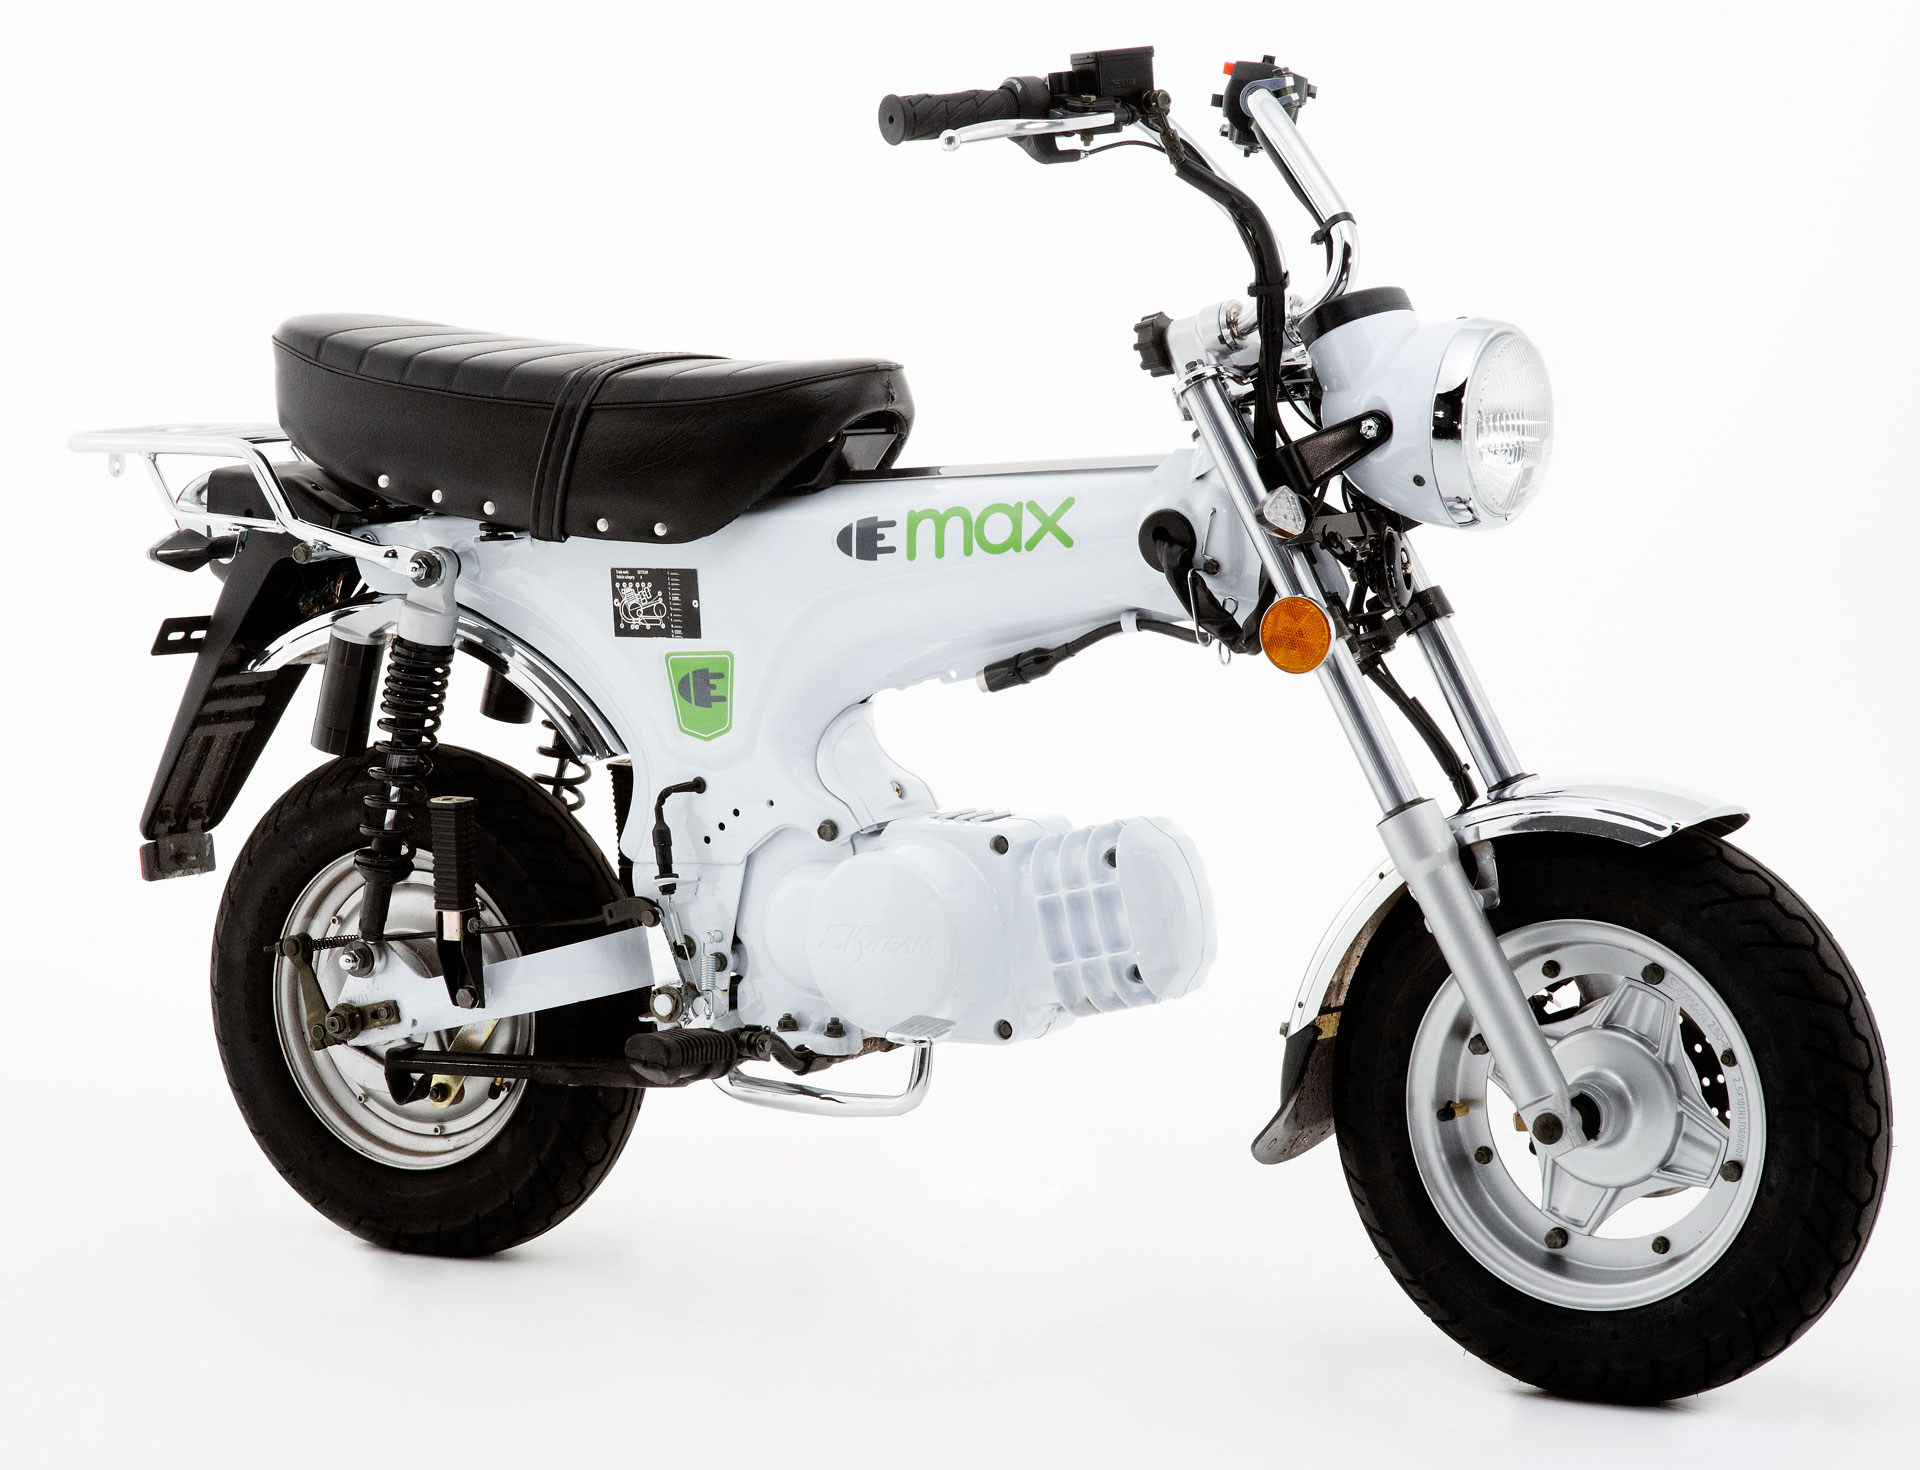 Xe máy dáng lạ Honda Dax ST125 về Việt Nam giá cả trăm triệu đồng